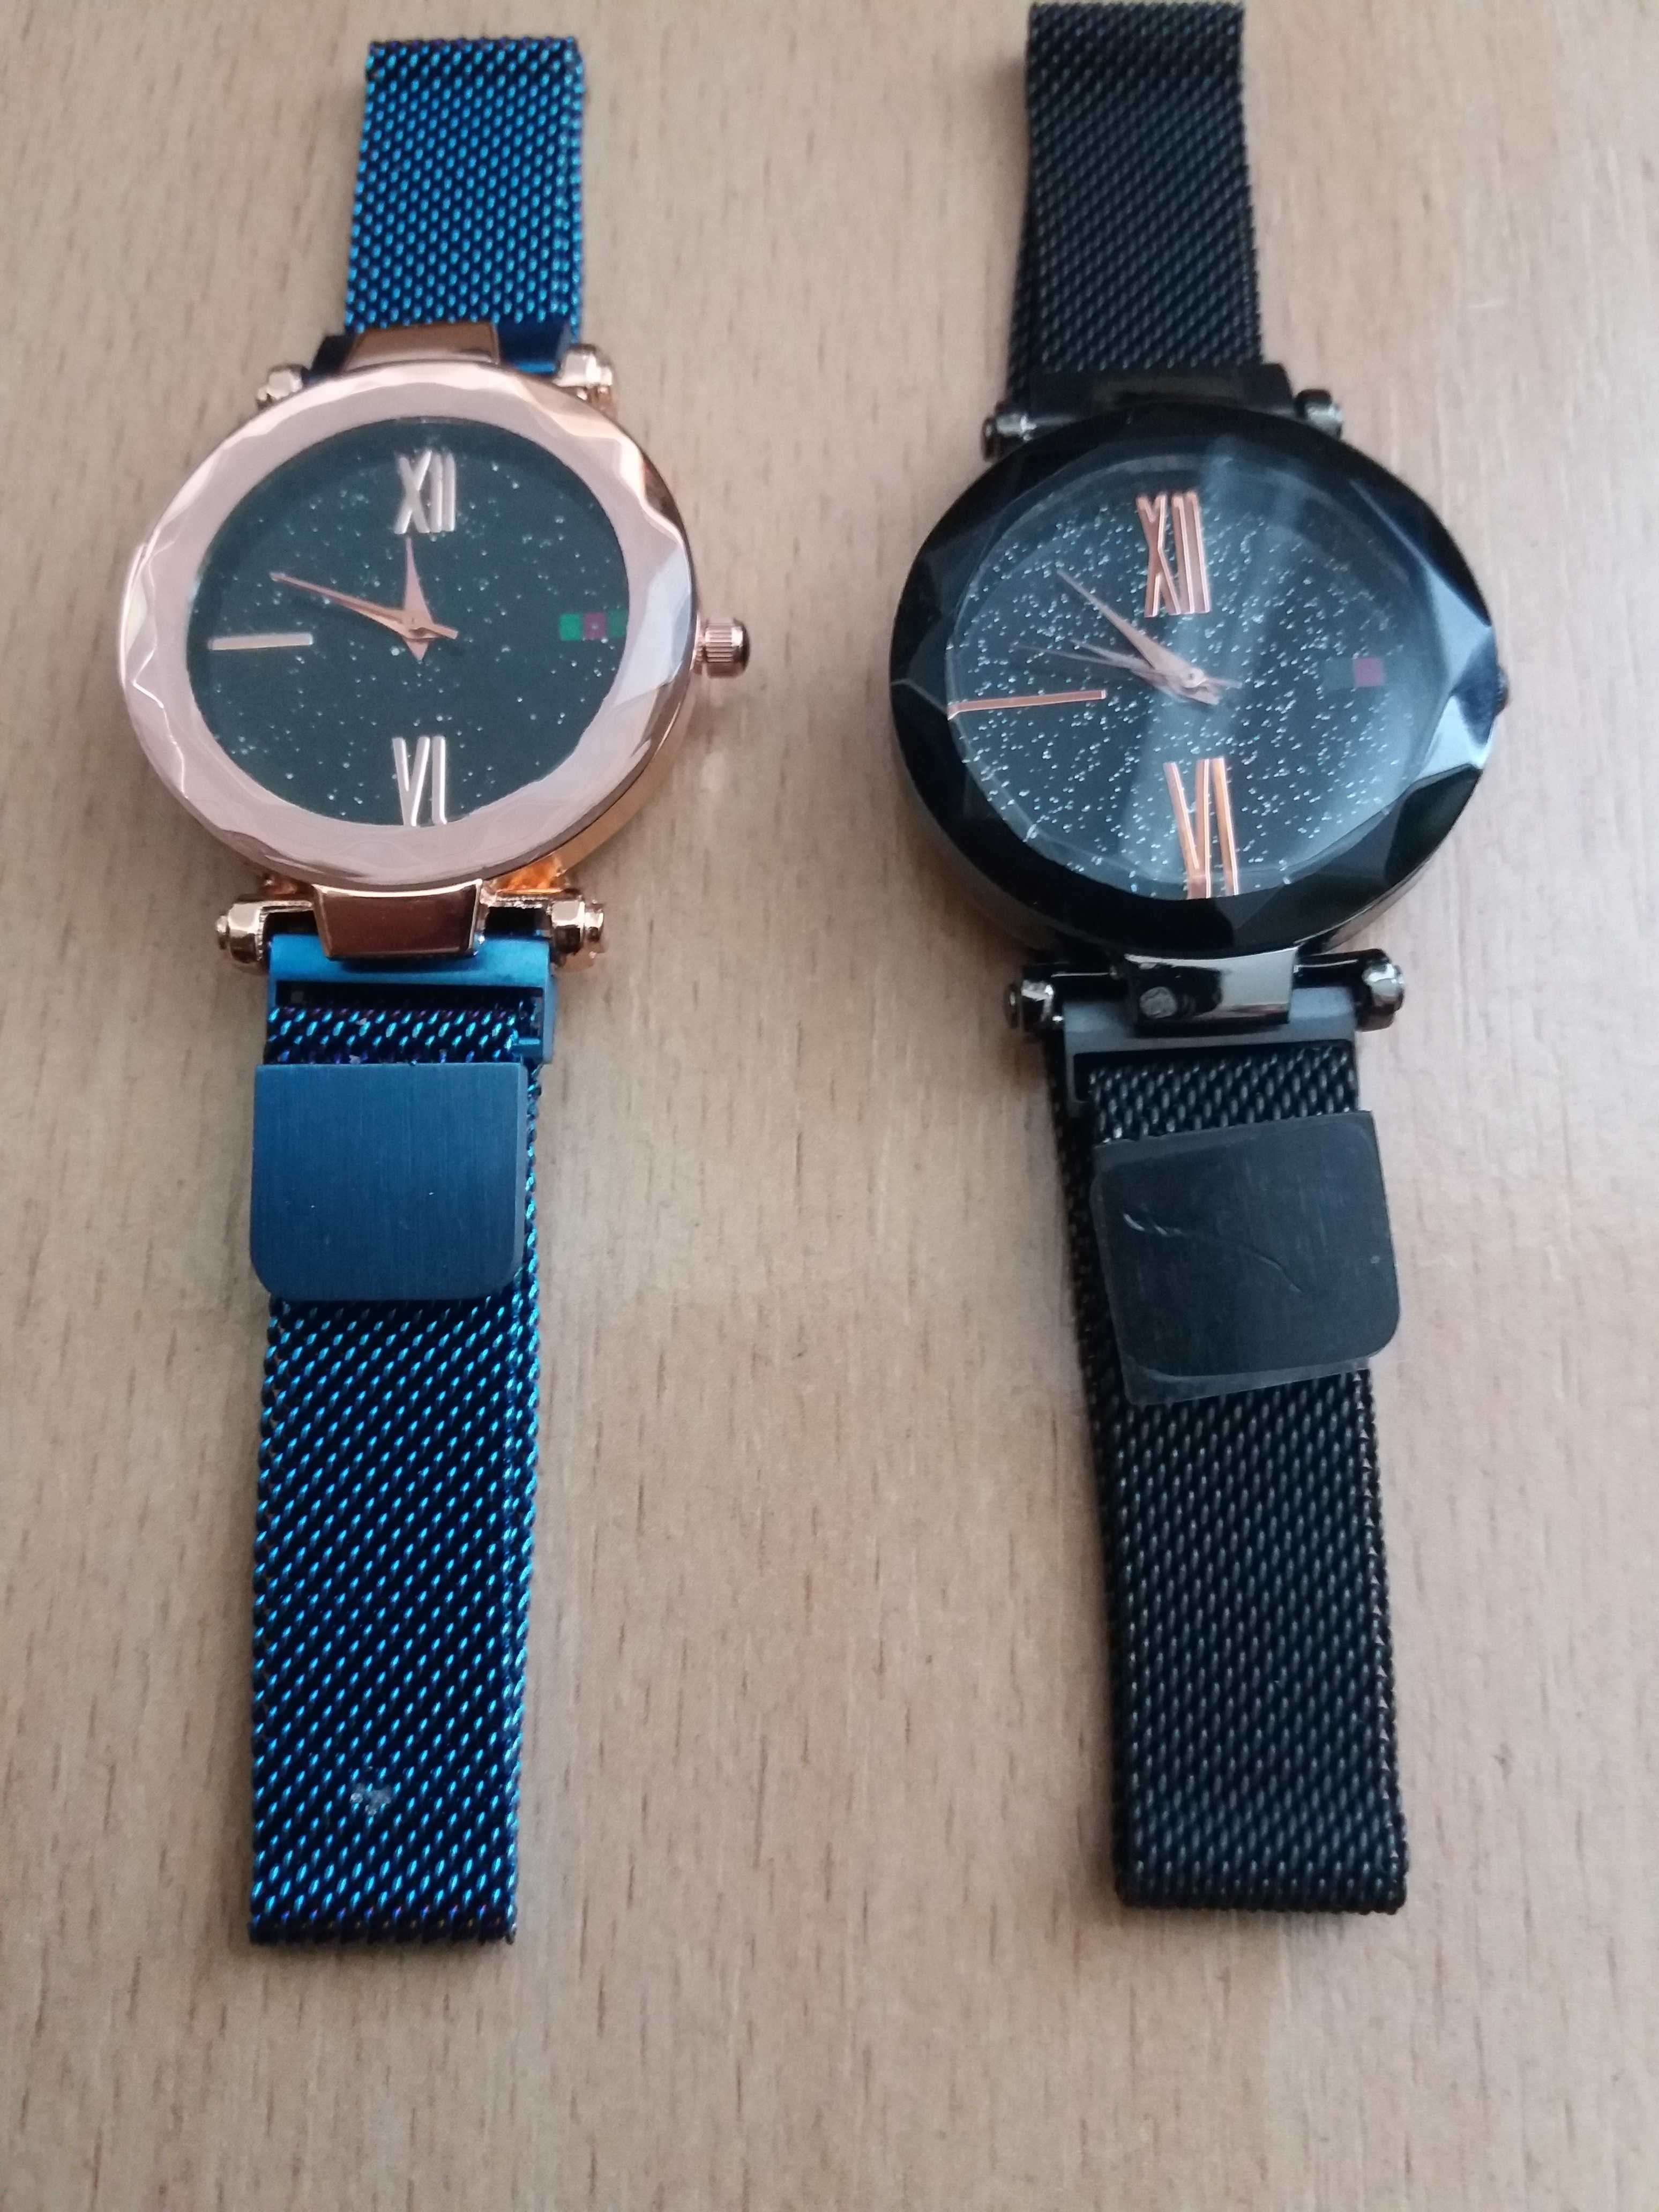 Нові наручні годинники, кварцеві. Сучасний дизайн.